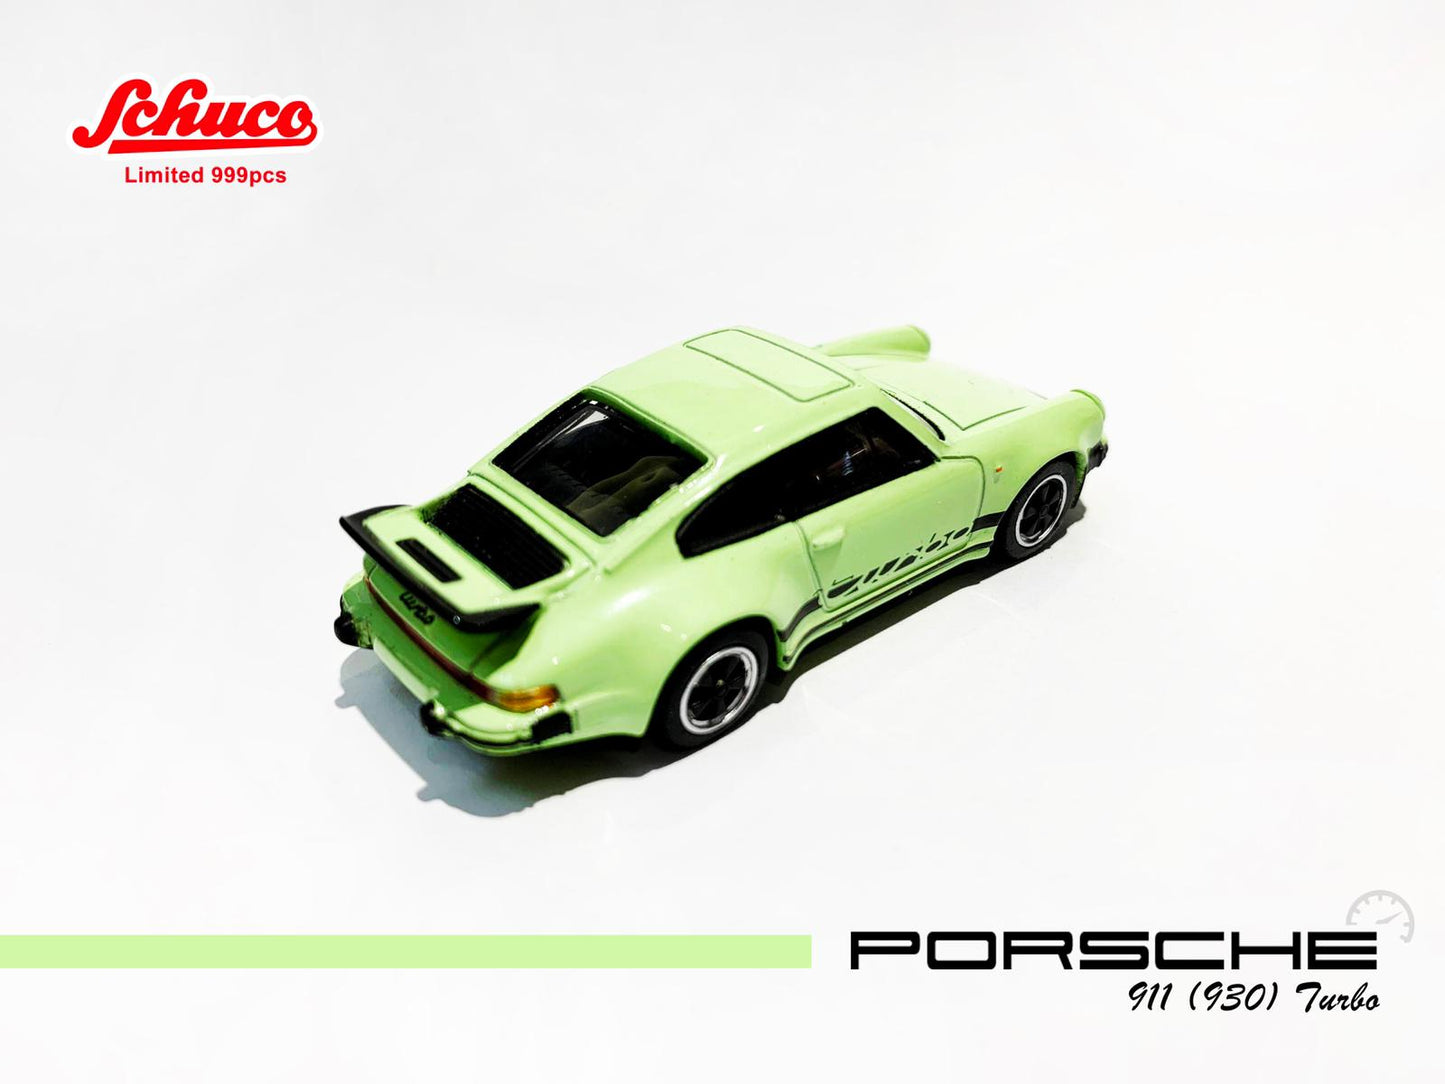 Schuco 1:64 Scale Schuco Hong Kong Exclusive
Porsche 911 Turbo Apple Green (930)